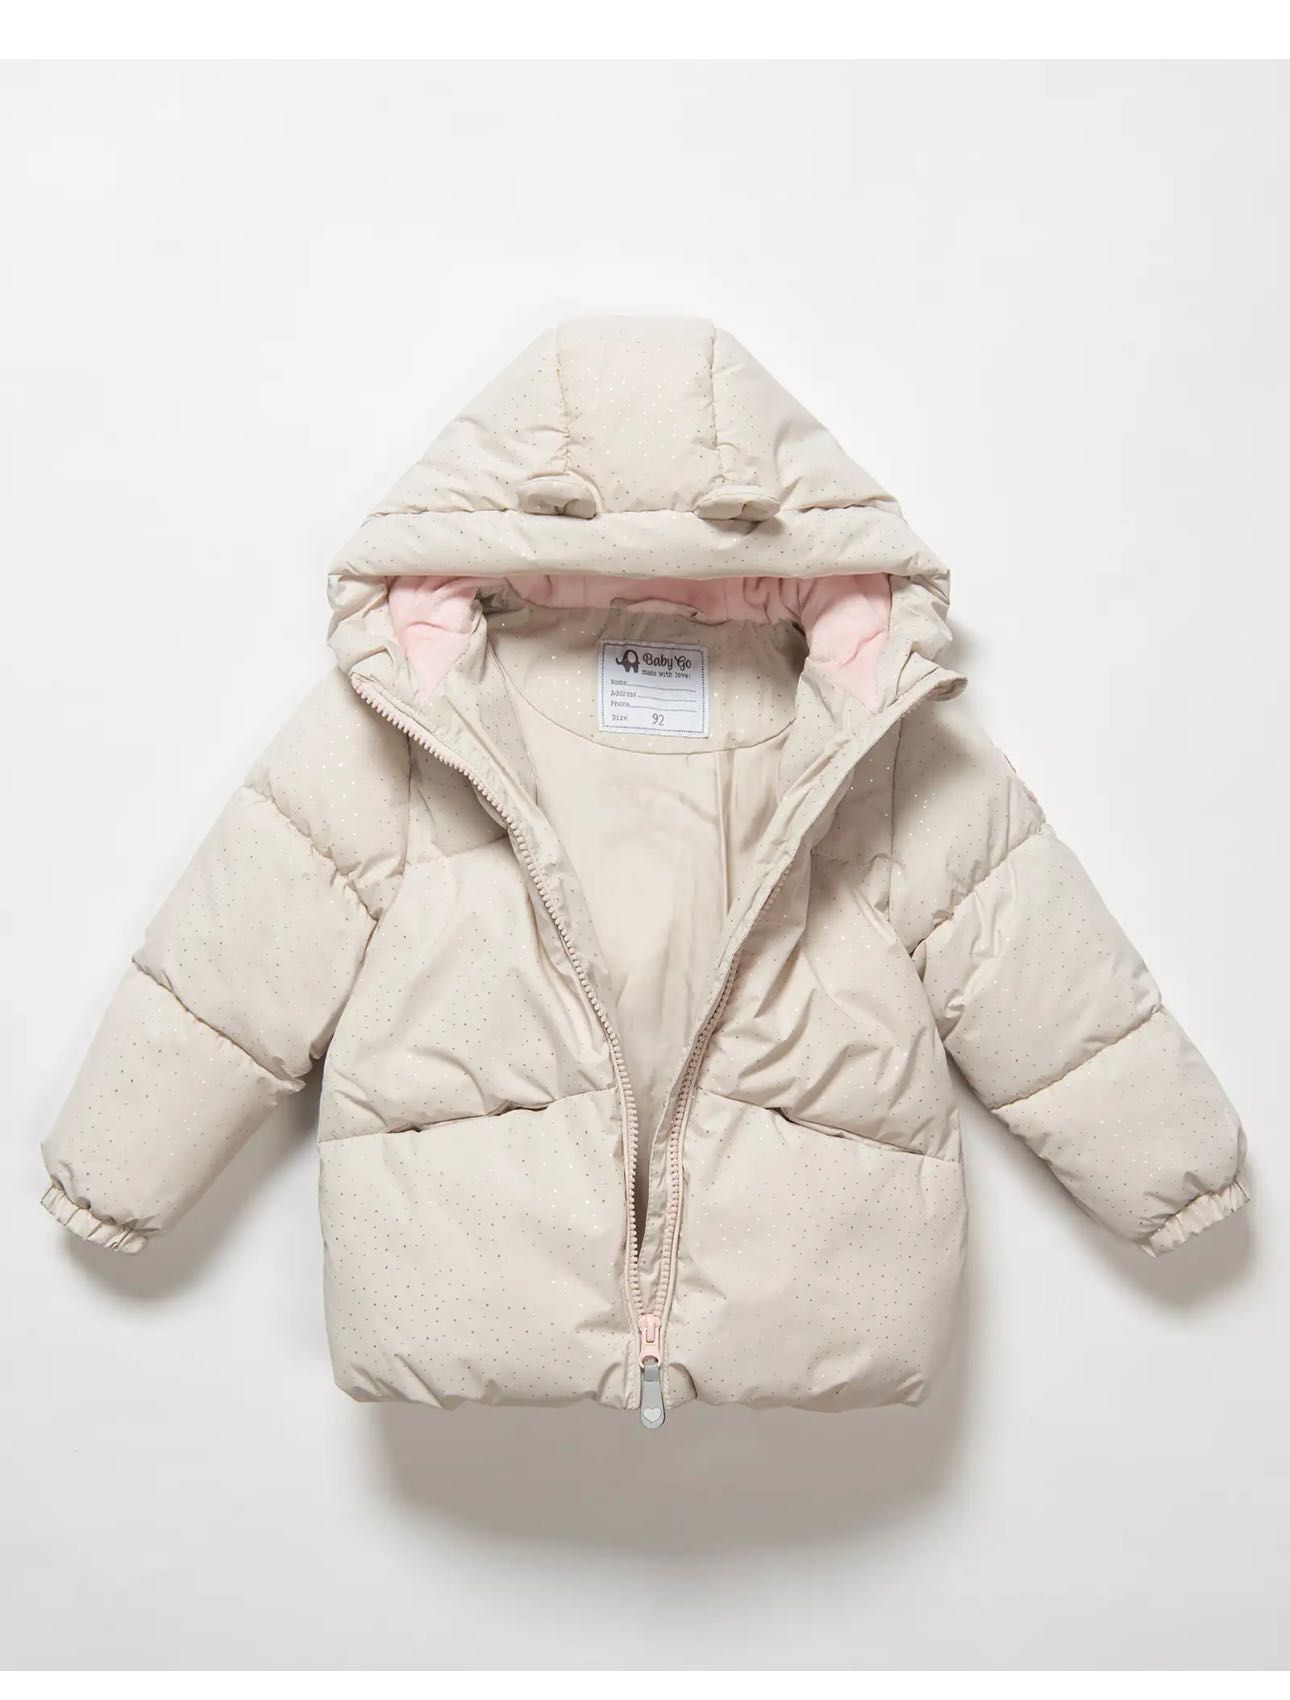 Куртка фирмы Baby go новая с бирками детская на девочку